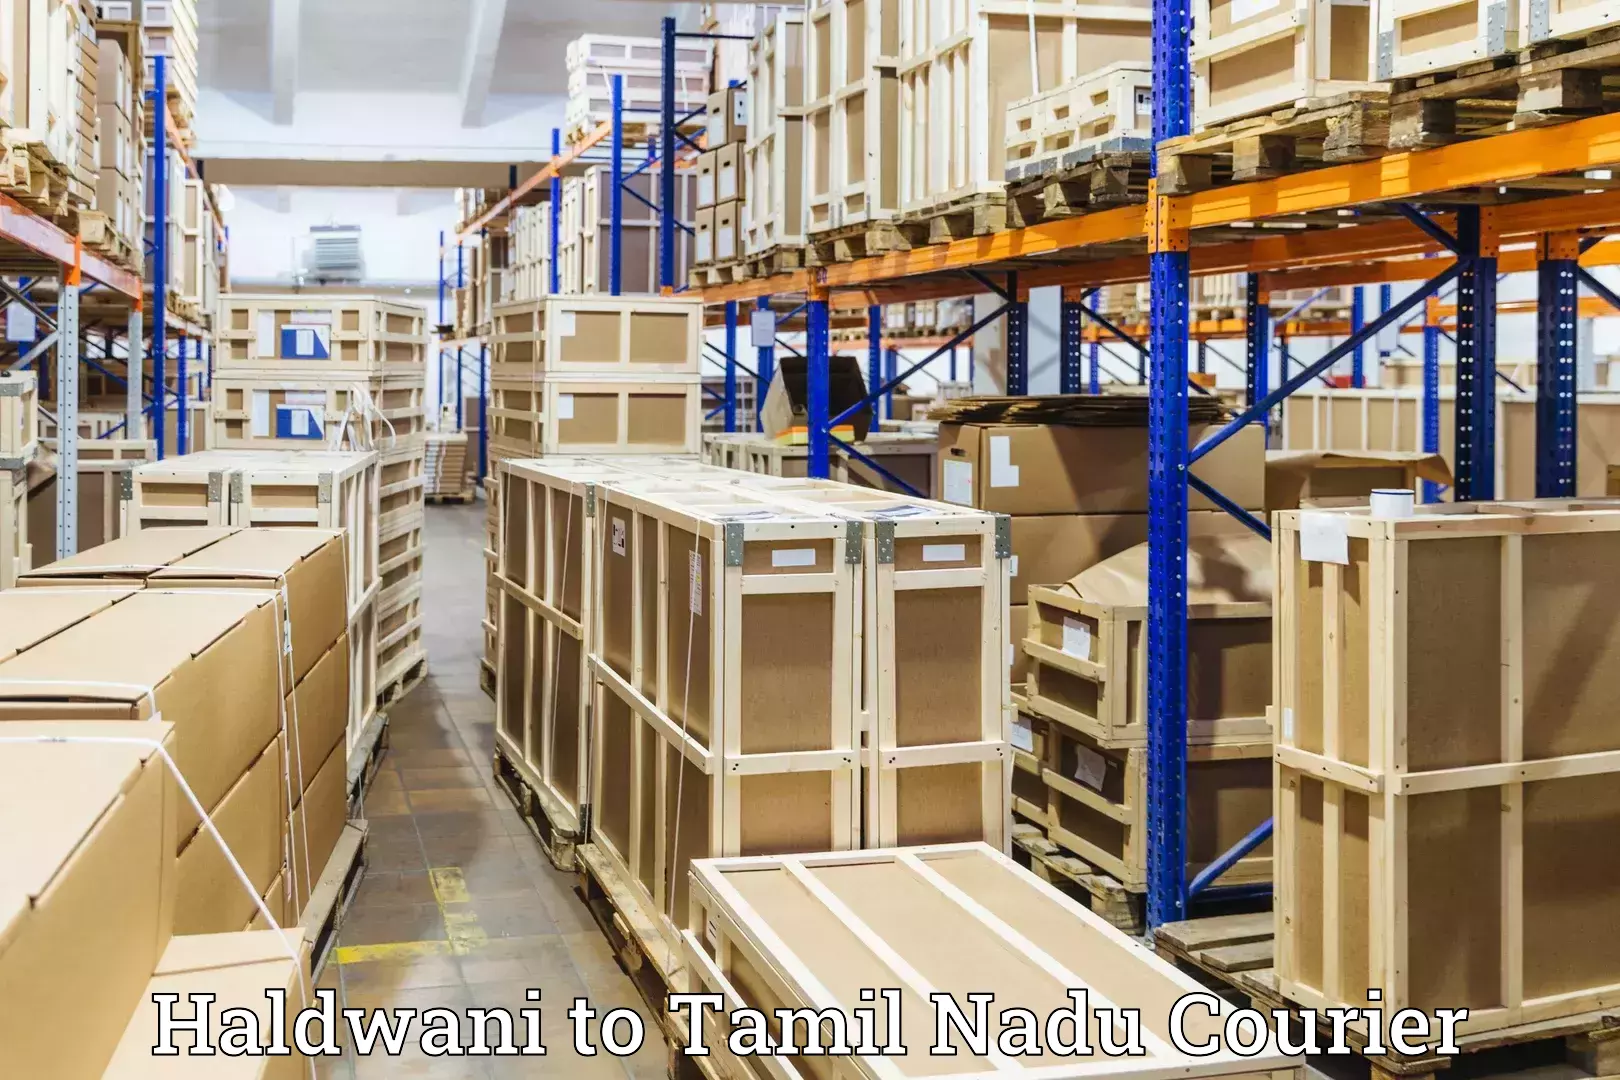 Baggage delivery management Haldwani to Rathinasabapathy Puram